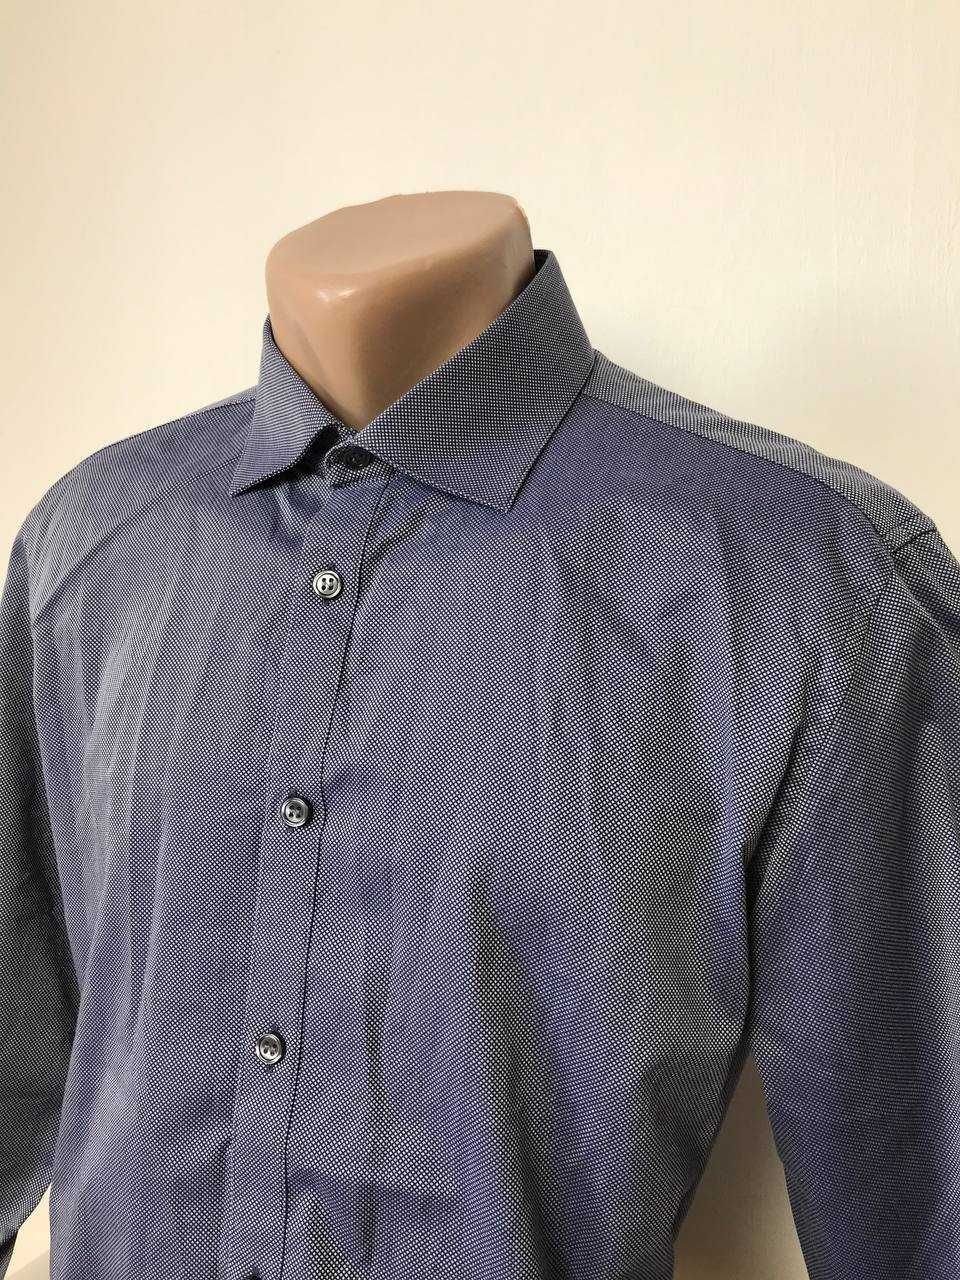 Сорочка DKNY Рубашка тениска футболка кофта свитшот дона карен